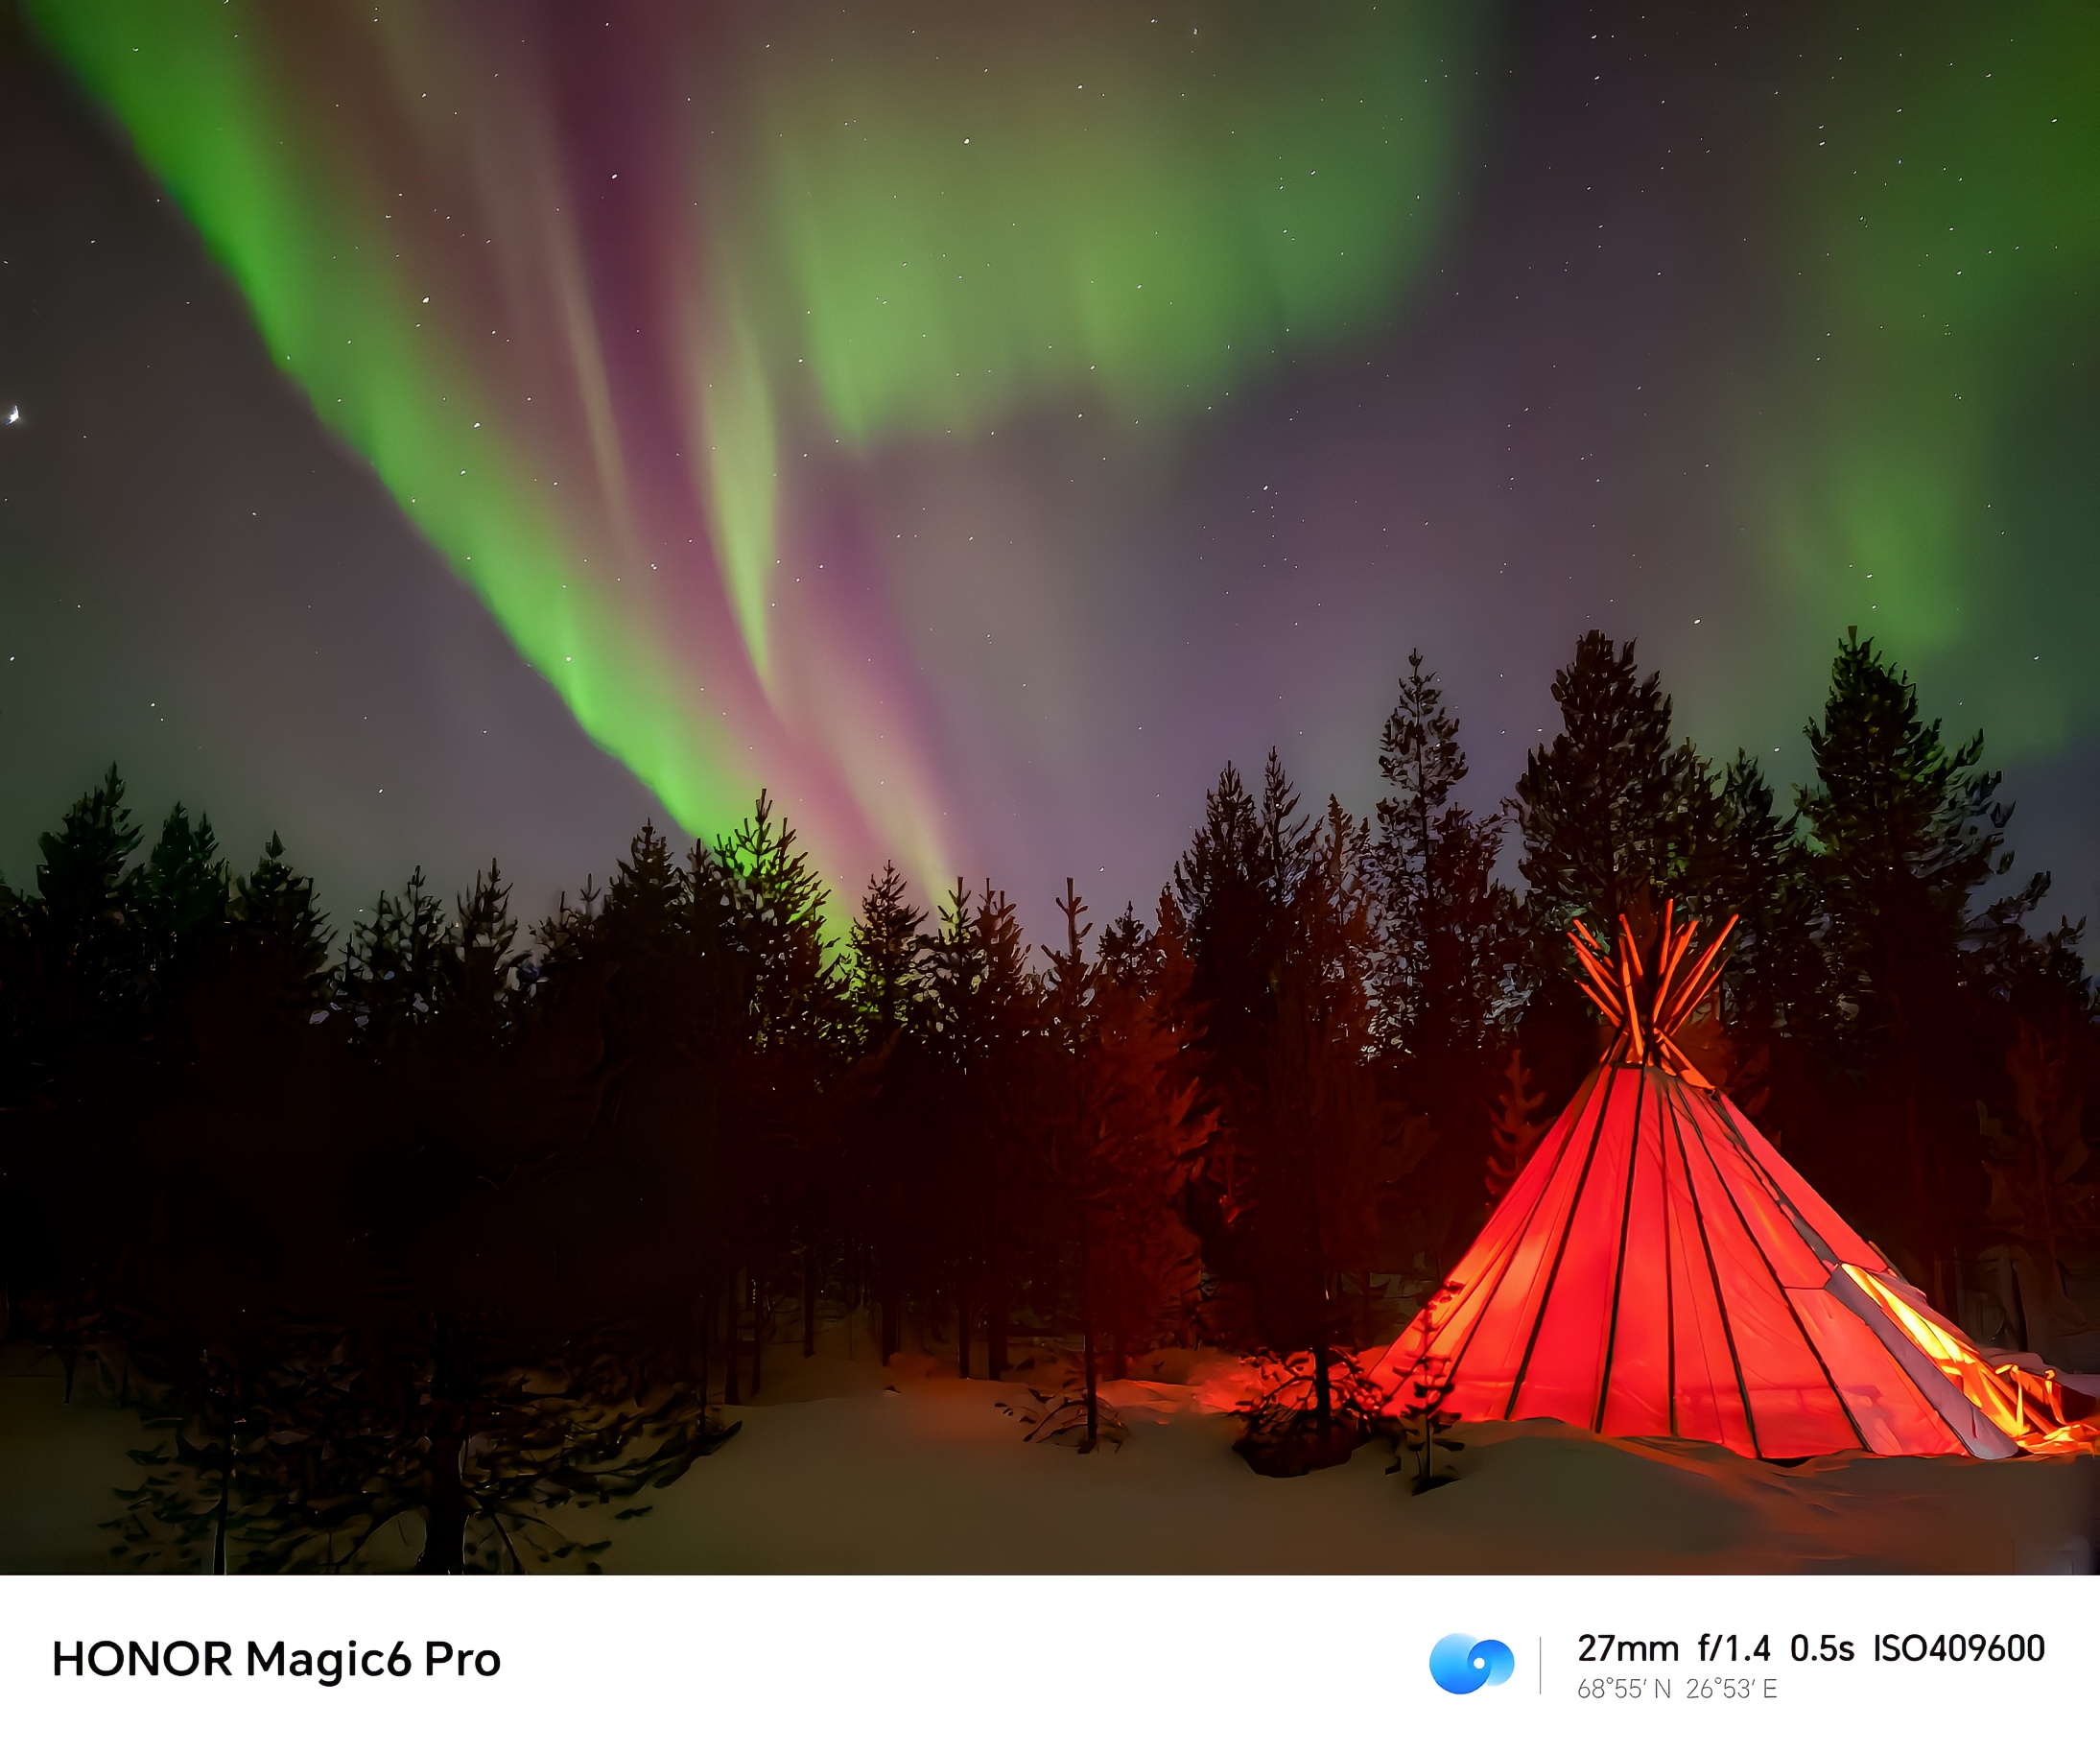 芬兰的拉普兰地区，是冬季观赏极光的好地方。晴朗的夜空，满天的繁星，飞舞的精灵，绝对是一场美妙的视觉盛